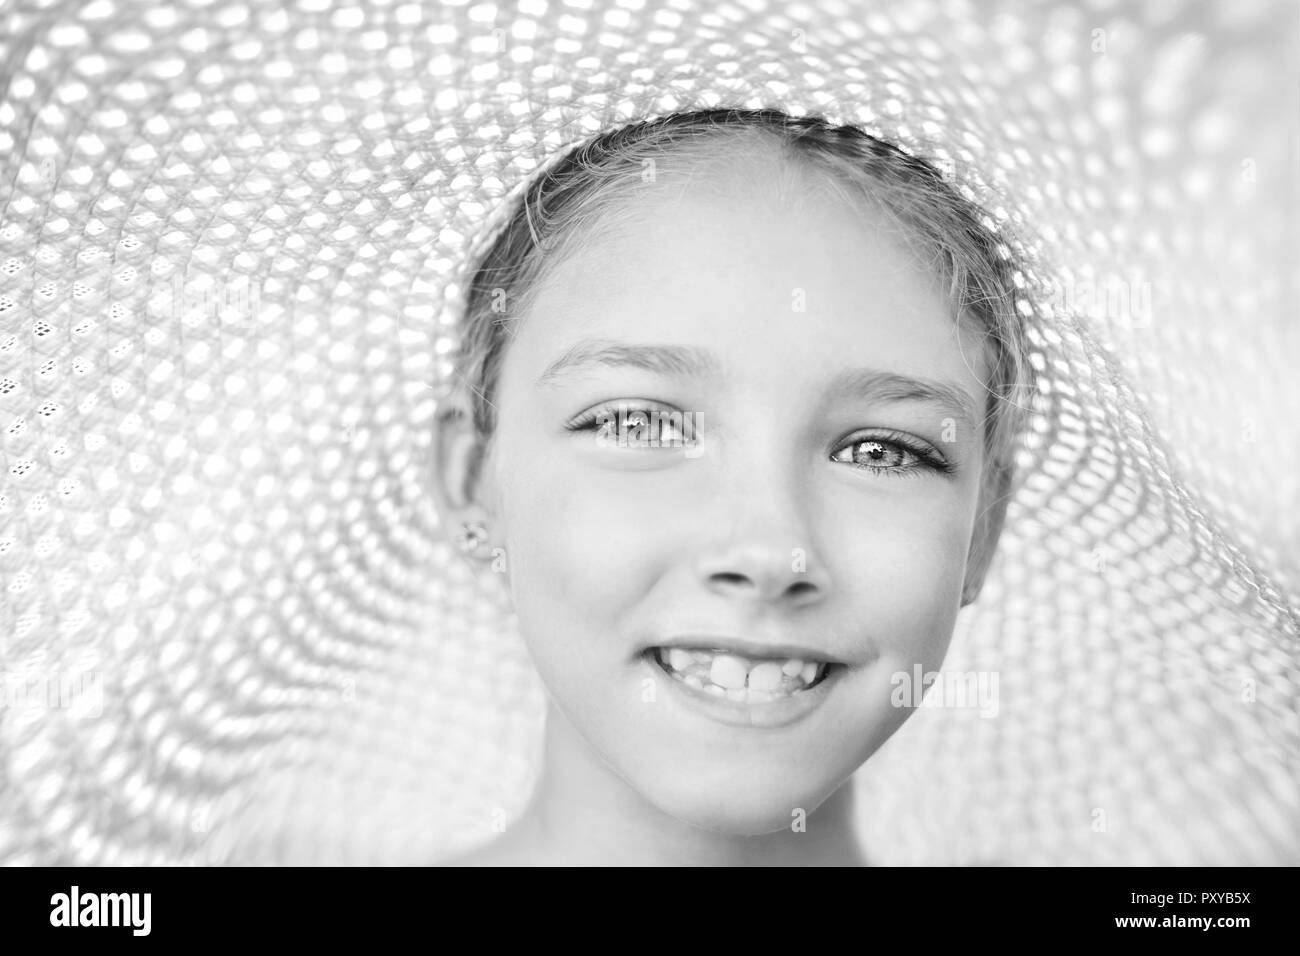 Sommer Portrait von einem schönen Mädchen in einen Hut. Das Konzept der Kindheit. Schwarz-weiß Foto. Stockfoto